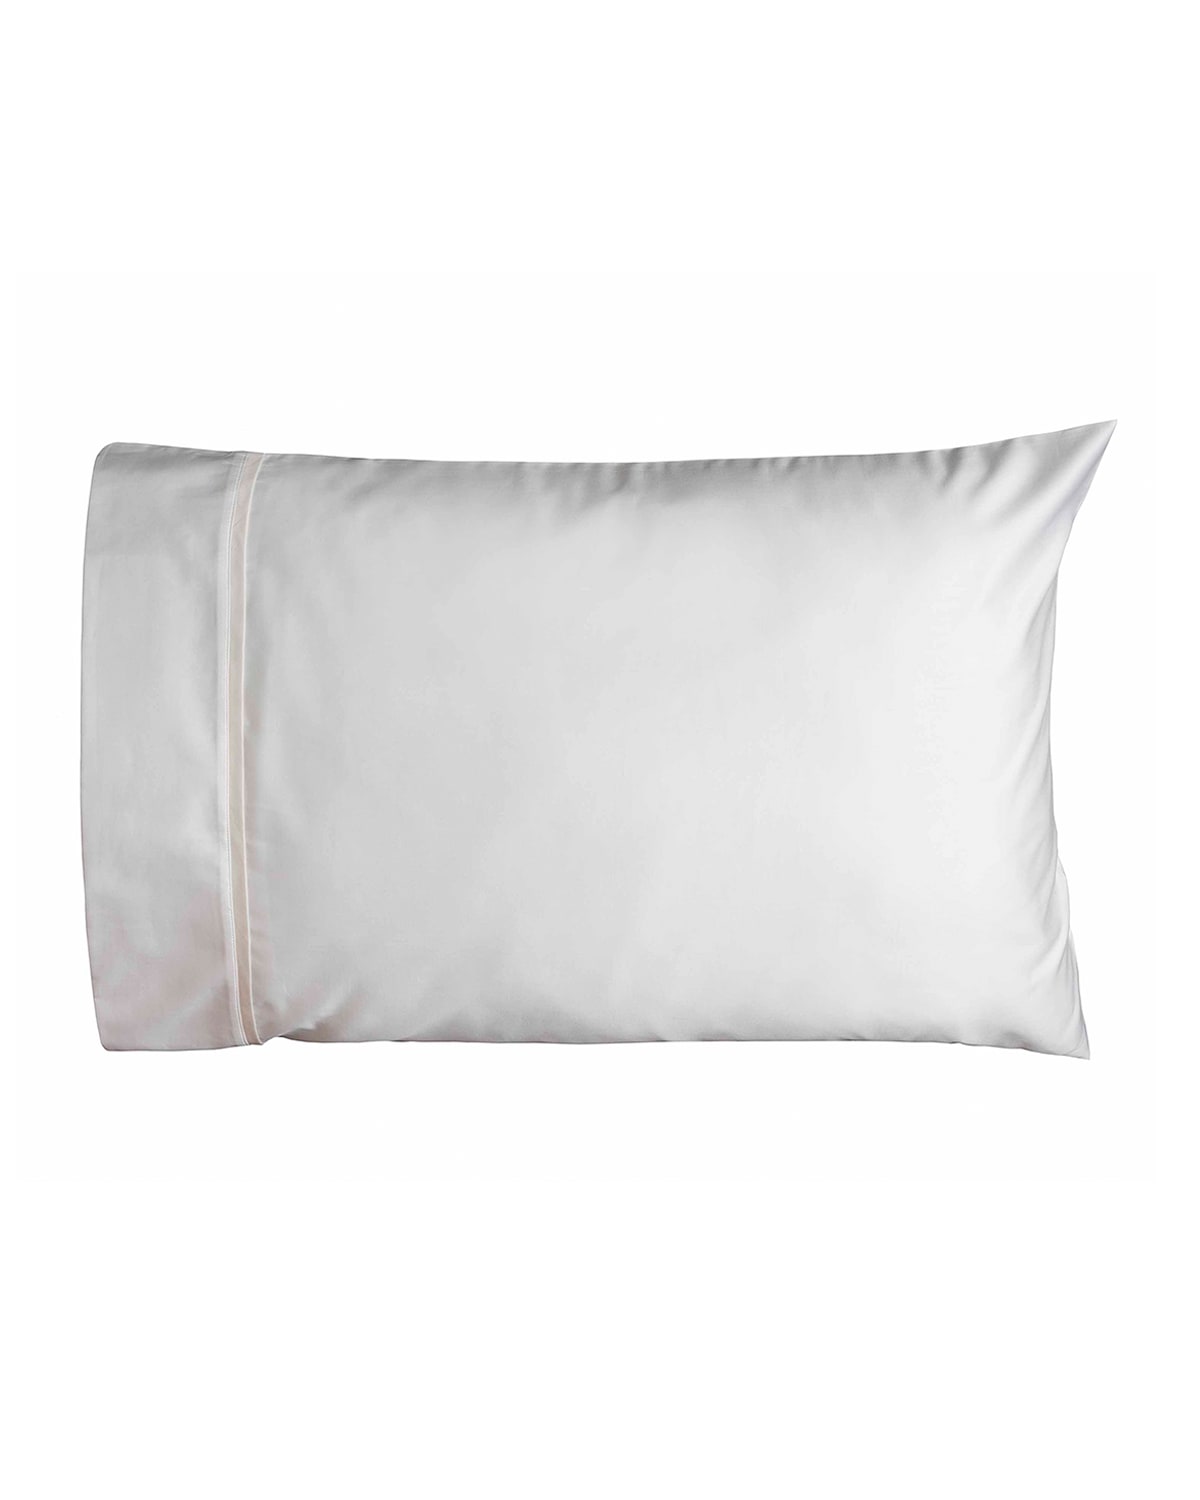 Bovi Fine Linens Estate Pair Of Standard Pillowcases, White/ivory